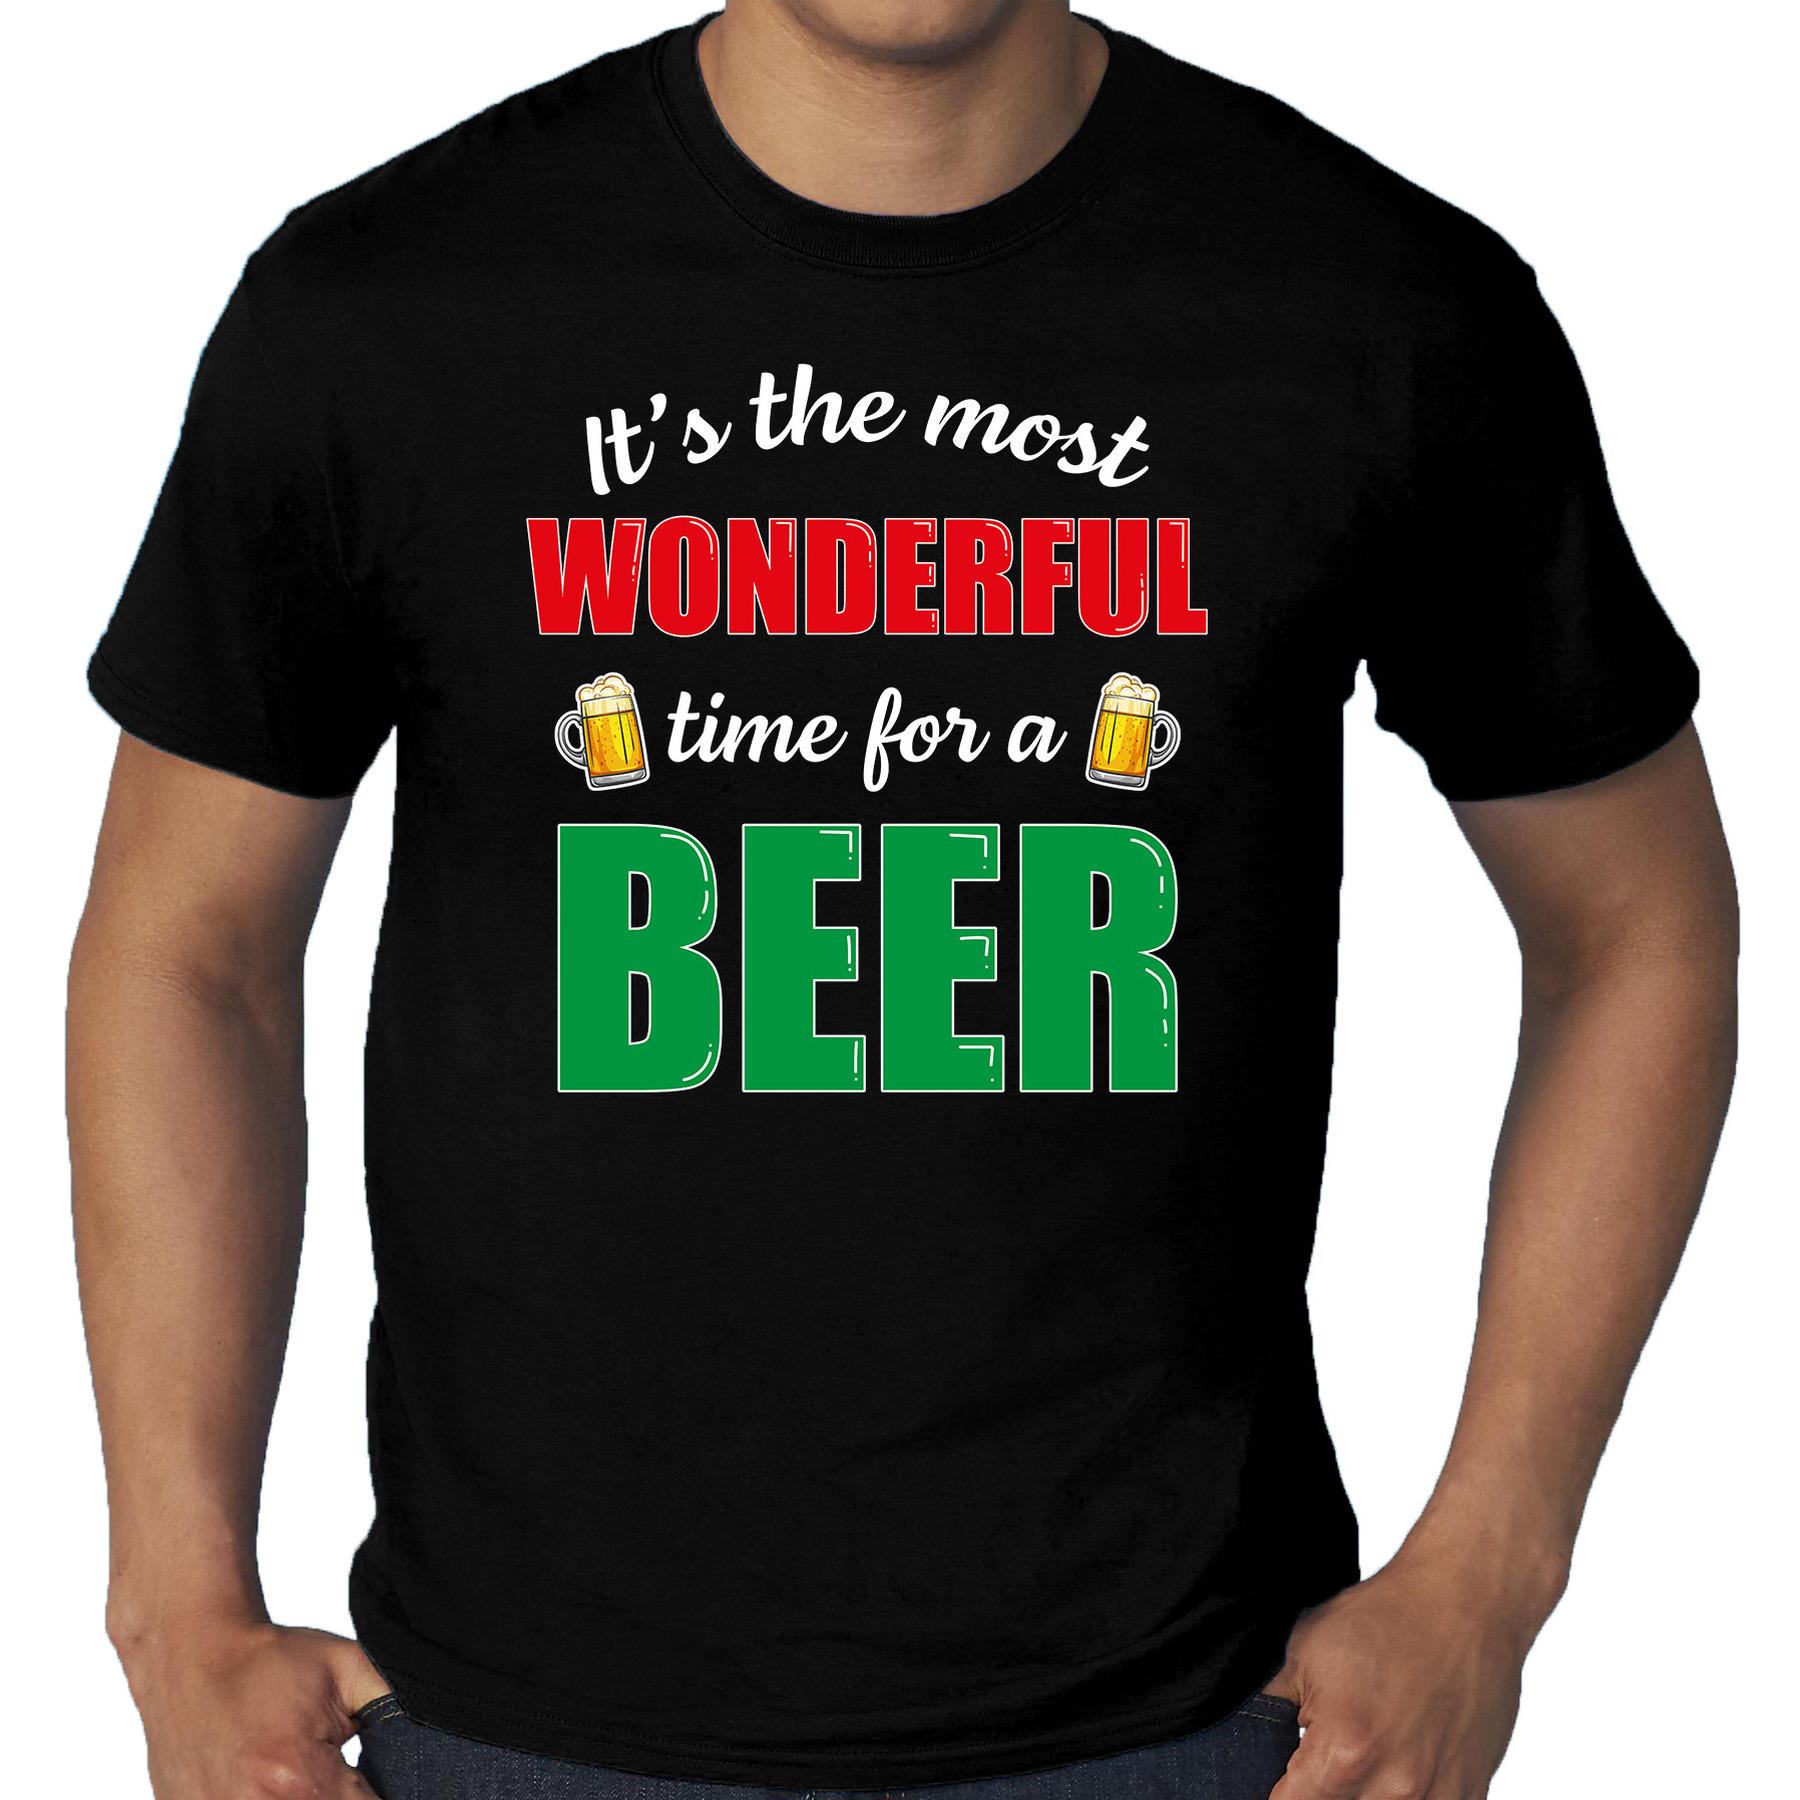 Grote maten wonderful beer fout Kerst bier t-shirt zwart voor heren